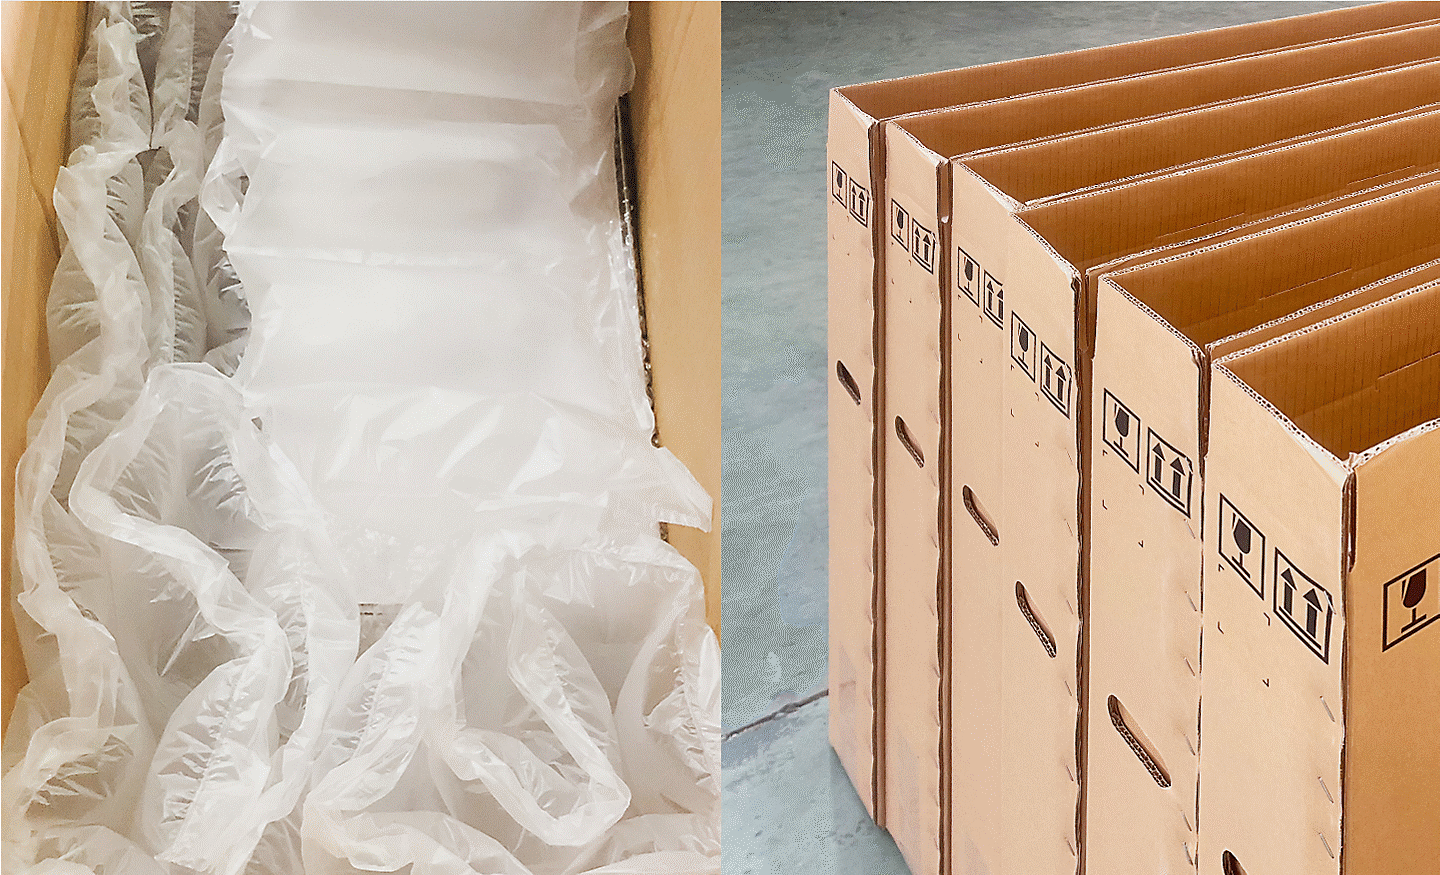 Imágenes de materiales secundarios reutilizados de bolsas de aire de amortiguación (a la izquierda) y empaques de caja de cartón (a la derecha) empleados en la fabricación